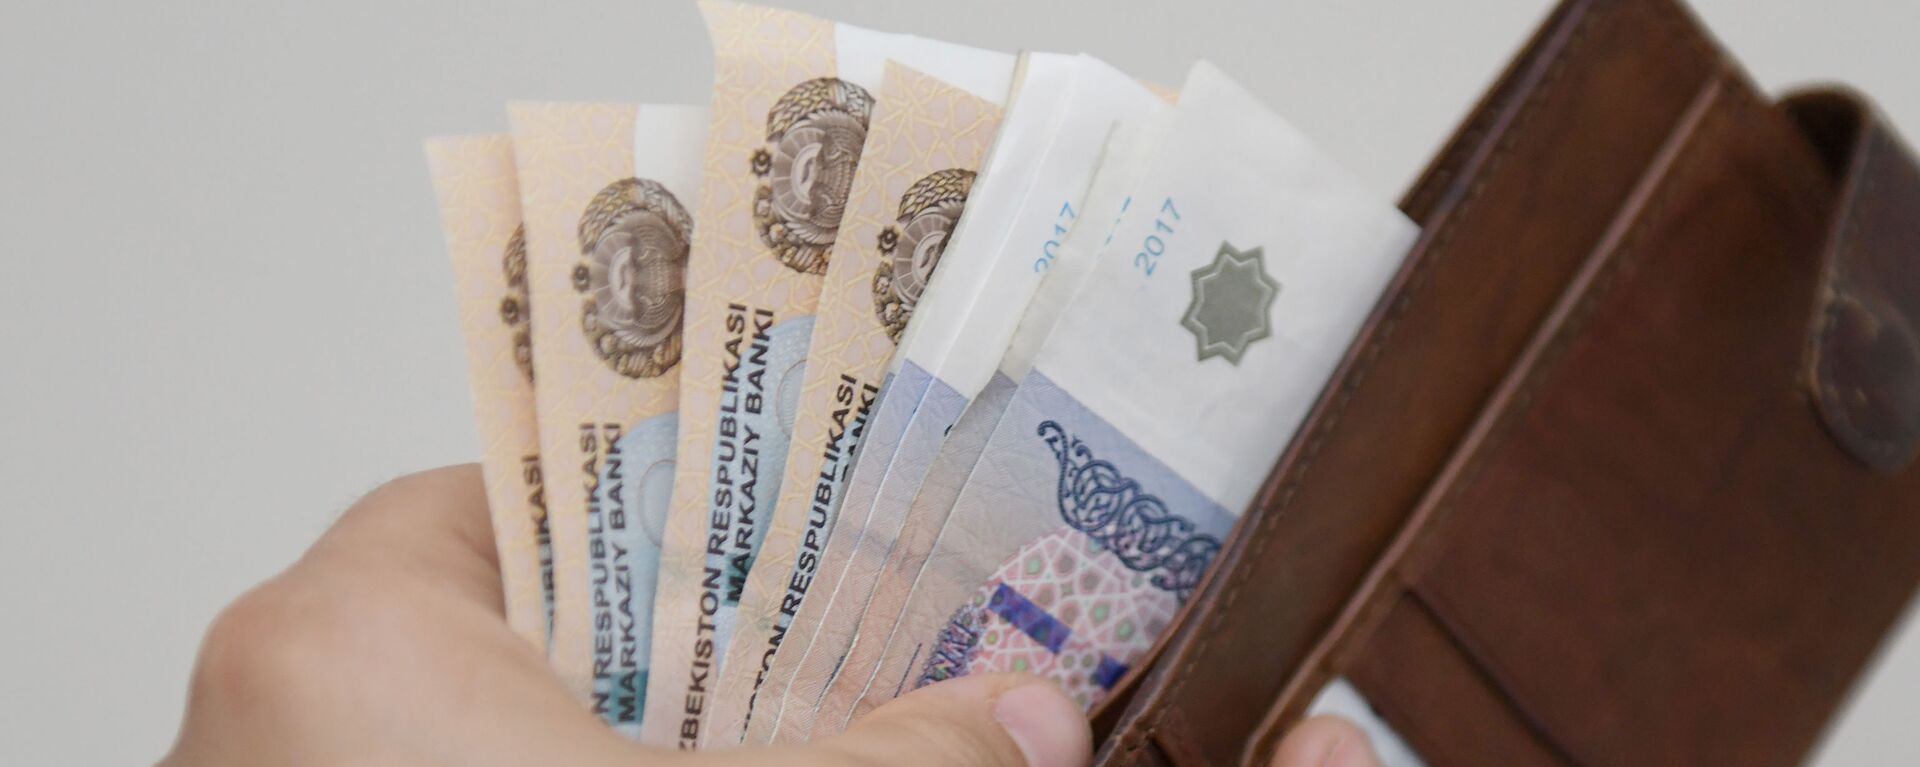 Национальная валюта Узбекистана — сум - Sputnik Узбекистан, 1920, 04.06.2021